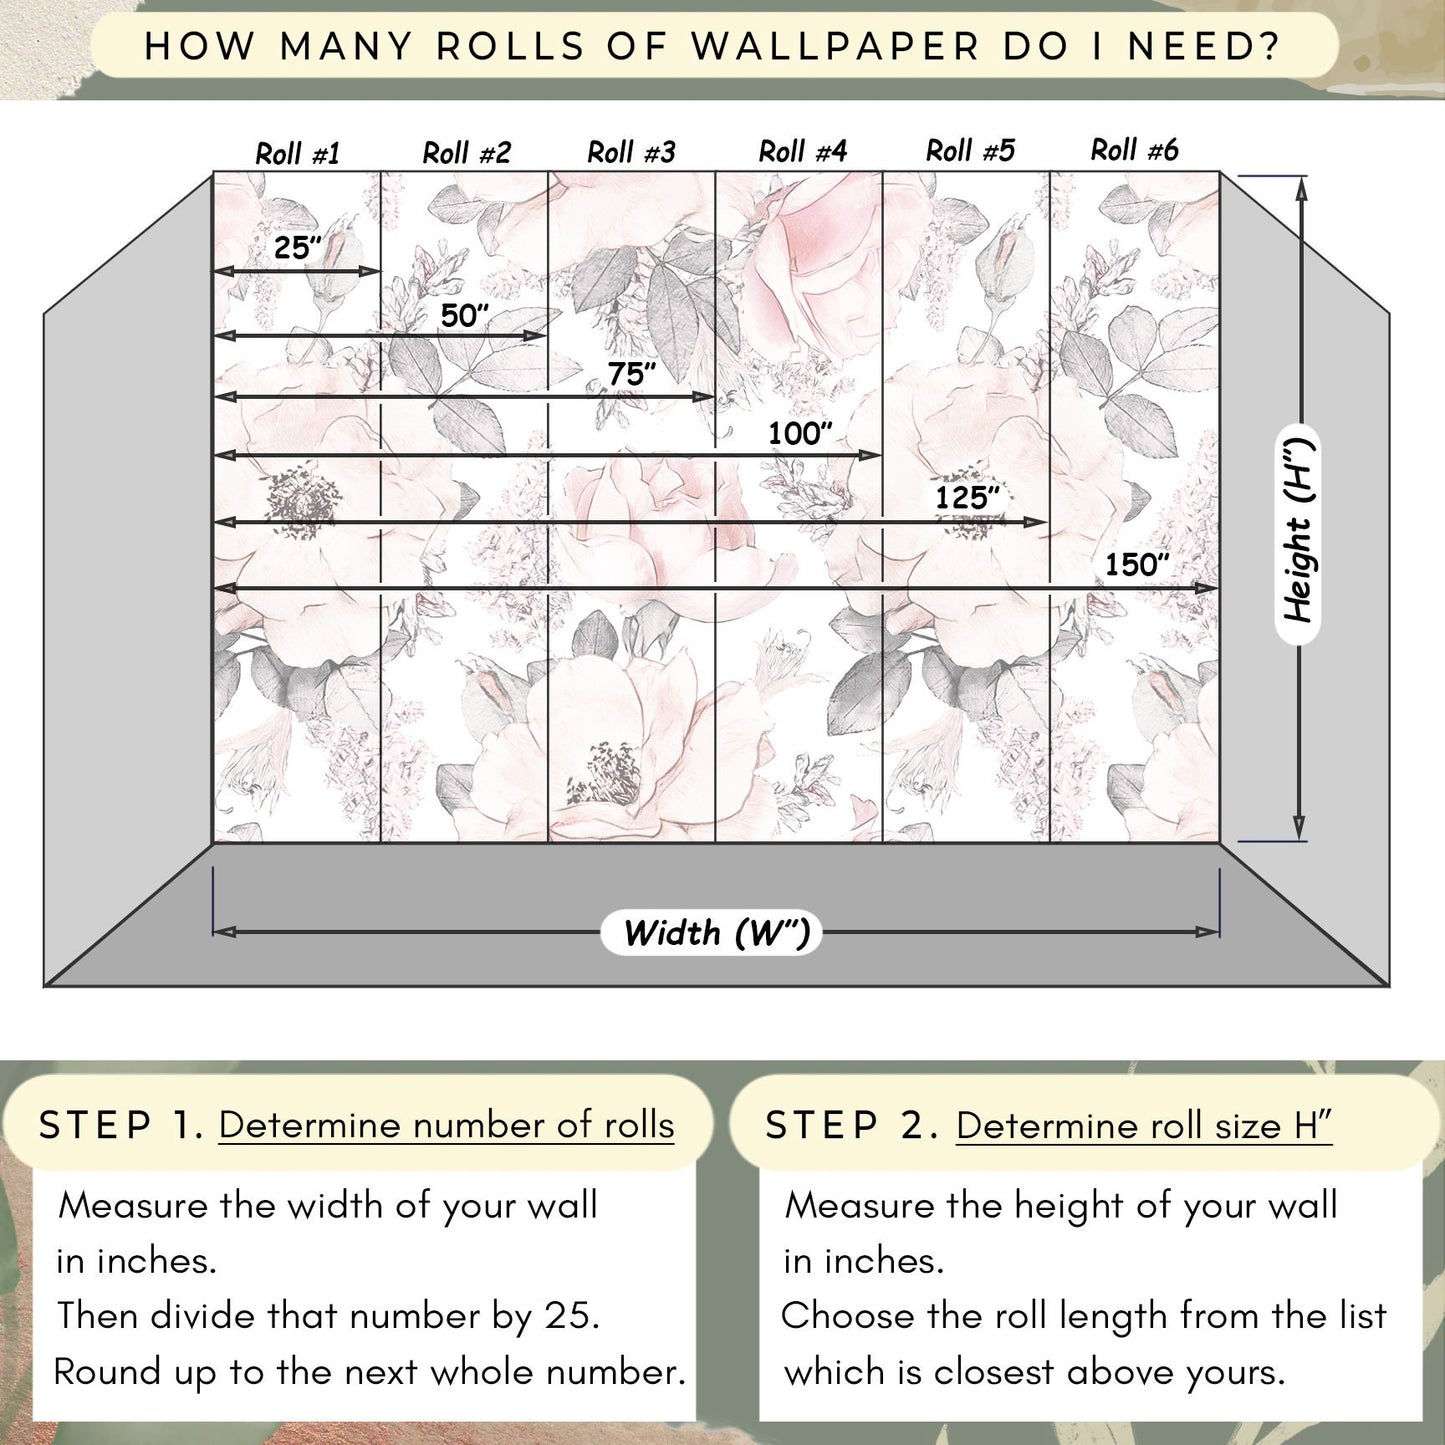 How many rolls of wallpaper do I need?